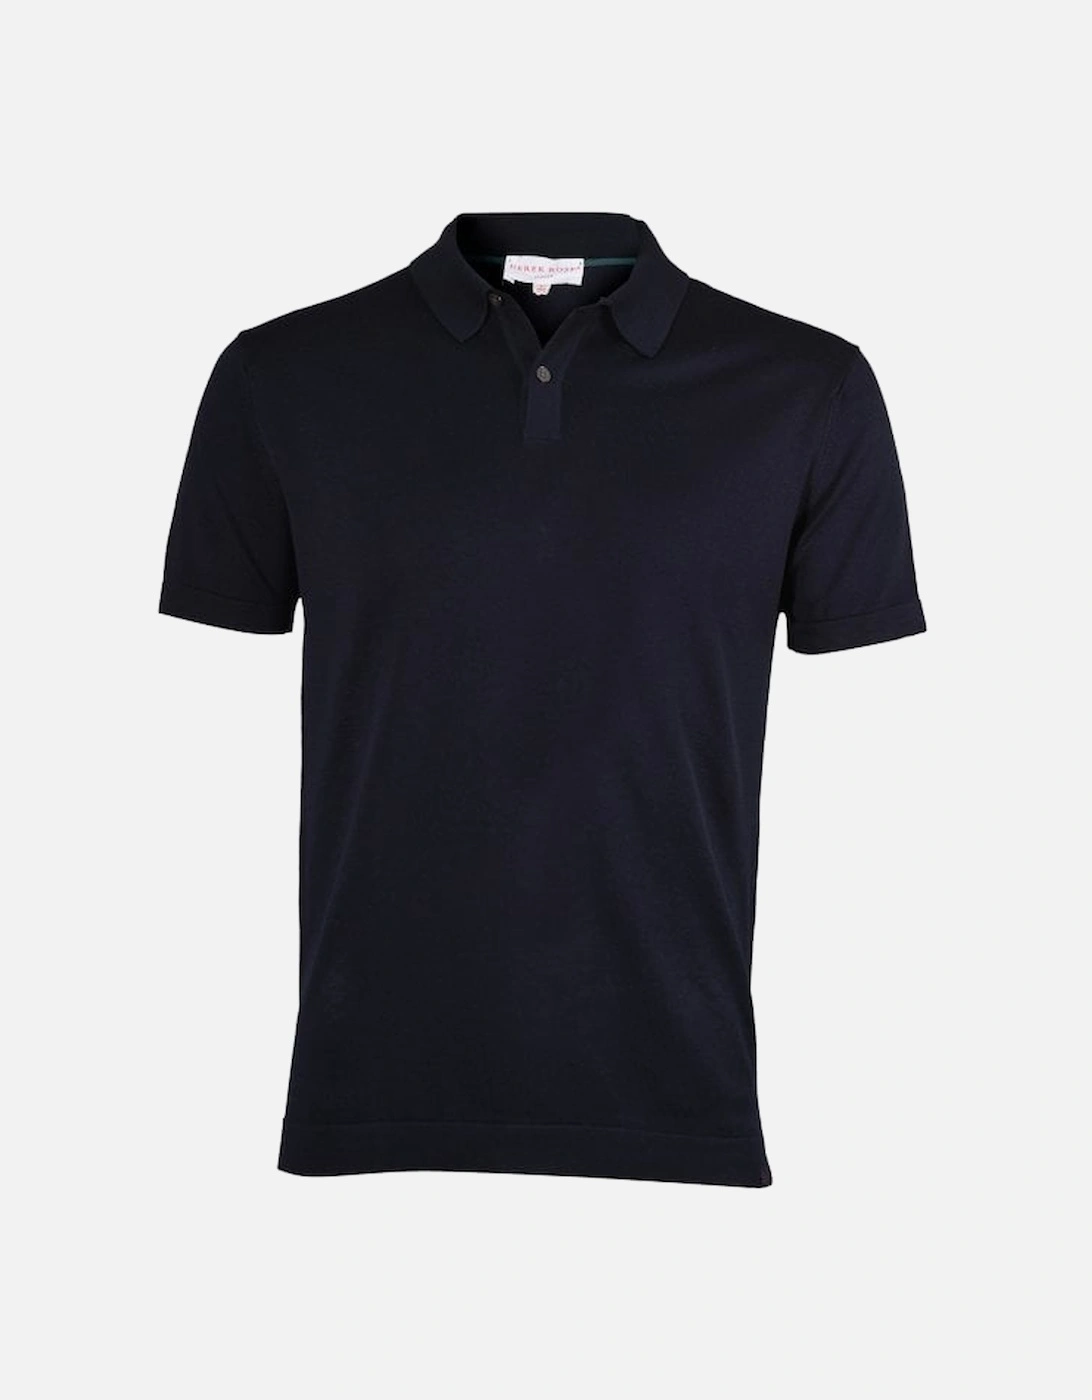 Sea Island Cotton Polo Shirt, Navy, 11 of 10